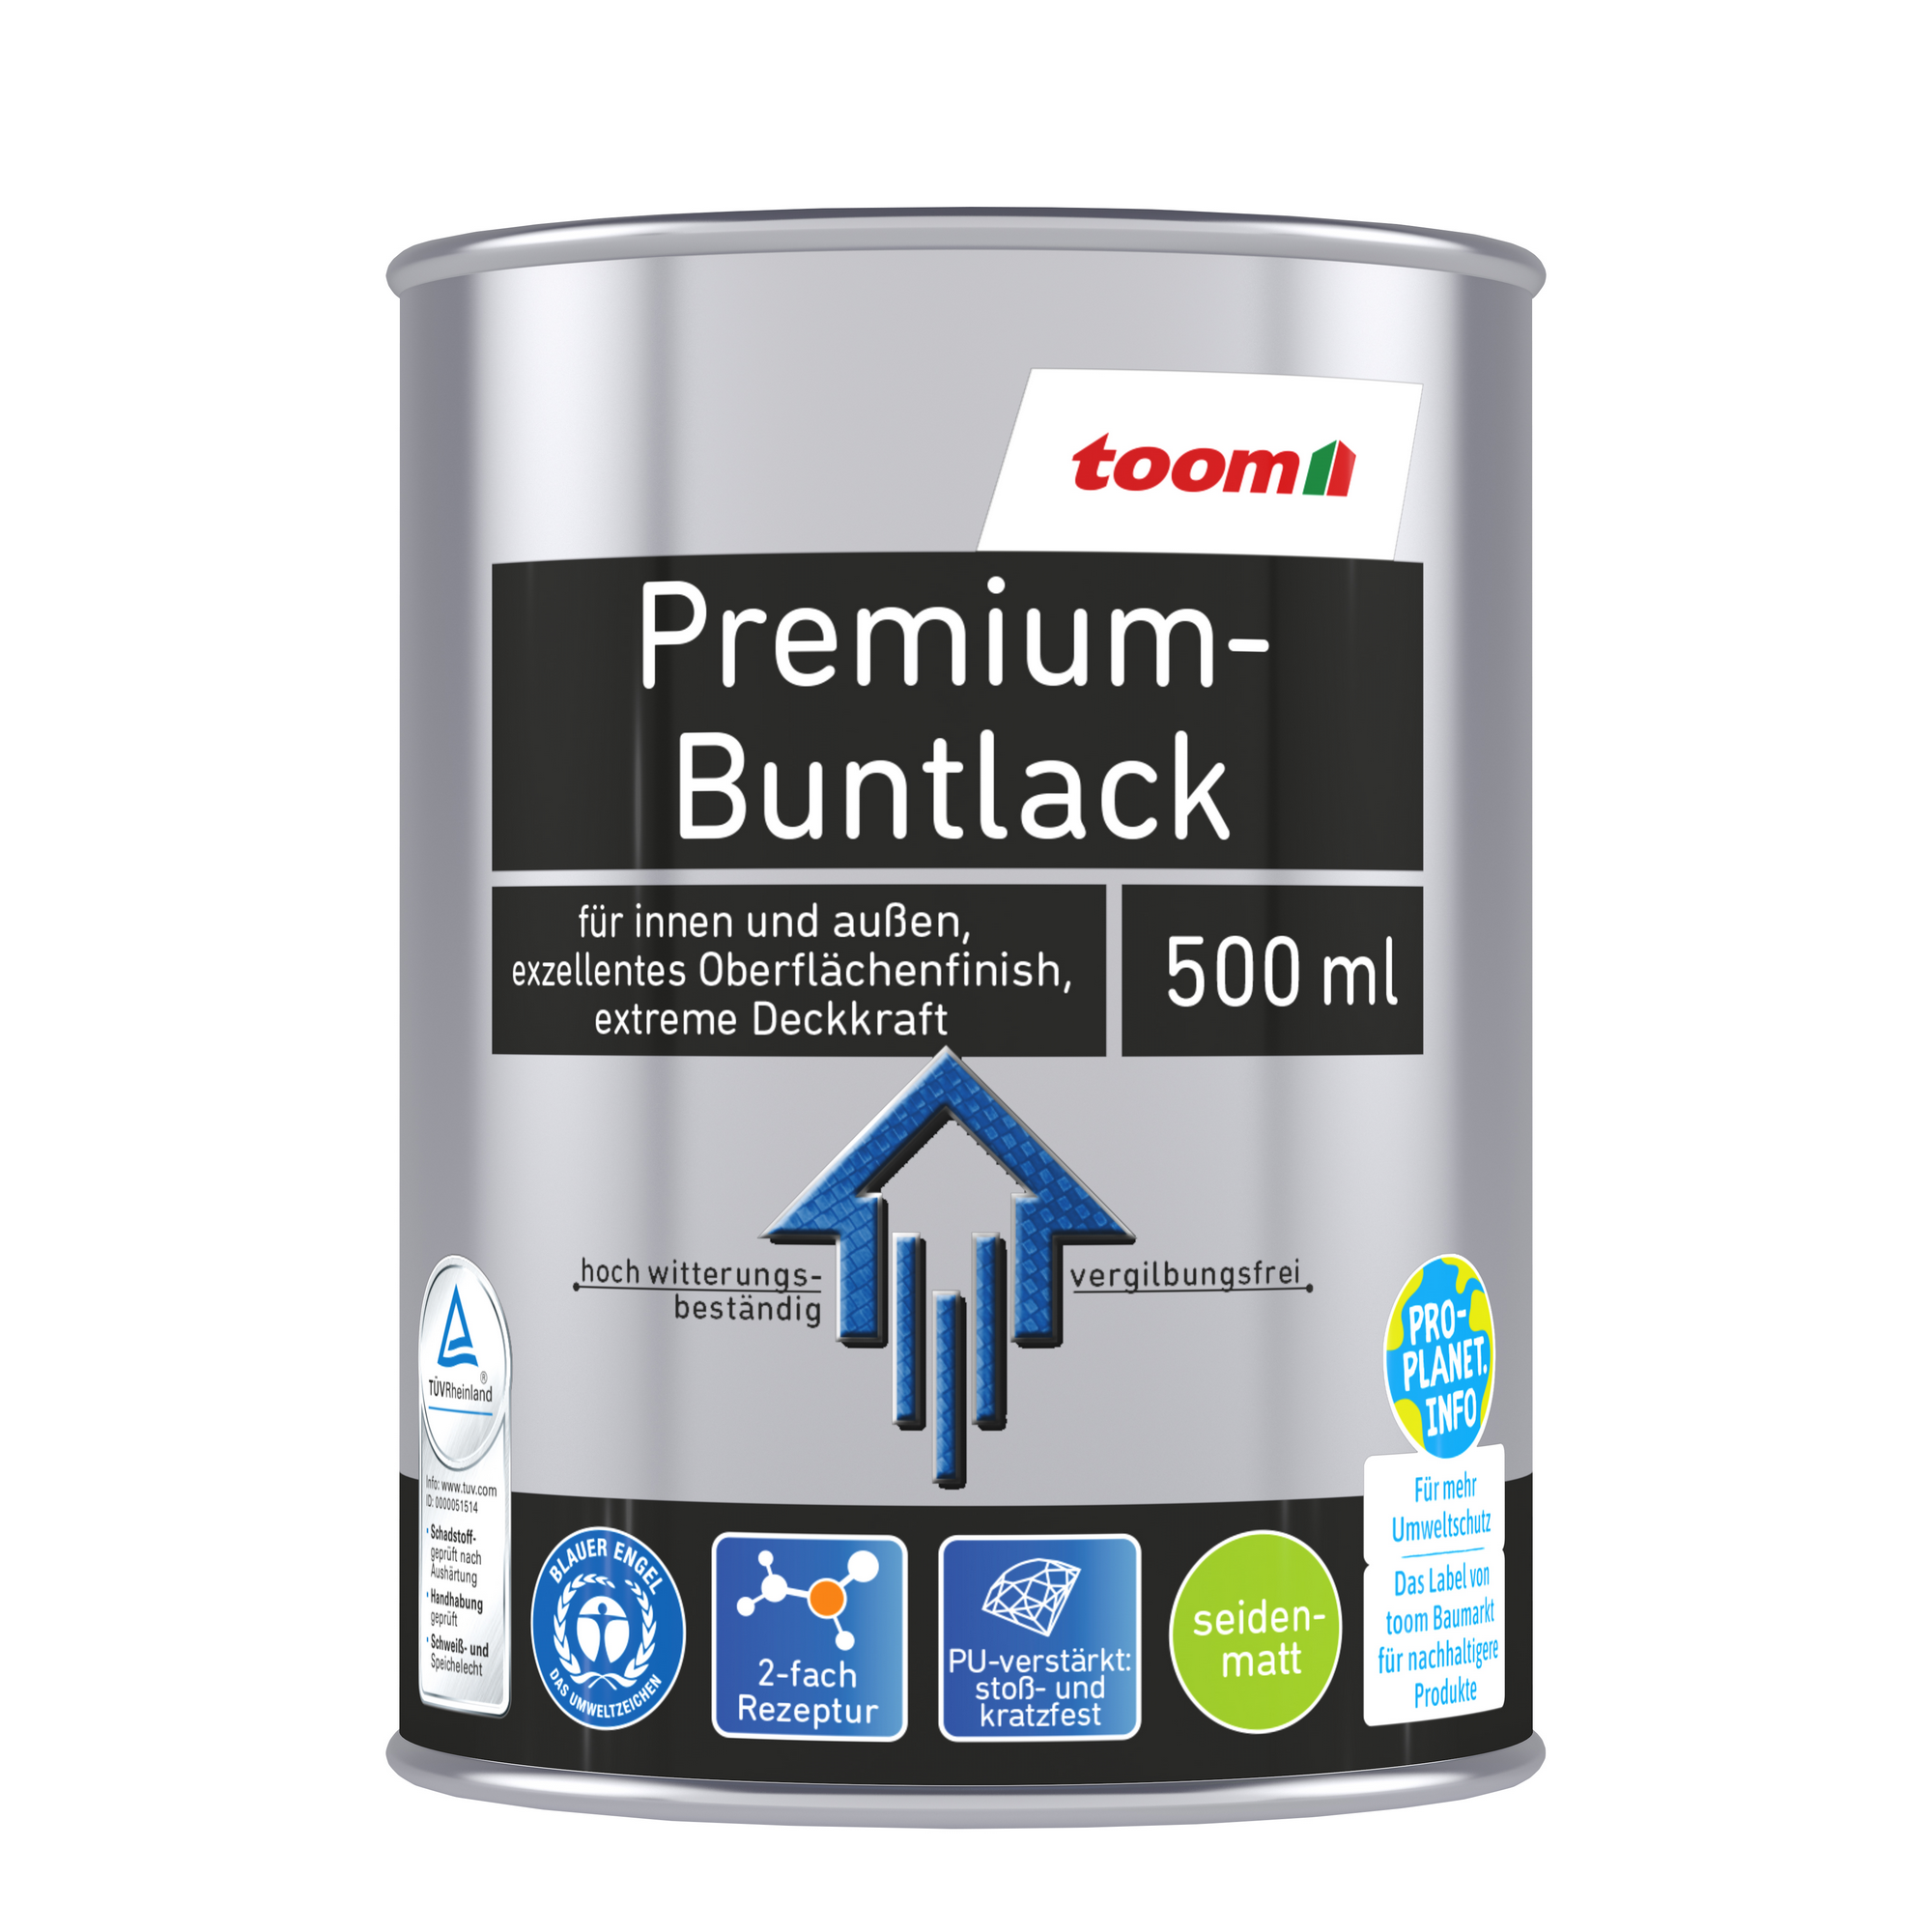 toom Premium-Buntlack grau seidenmatt 500 ml